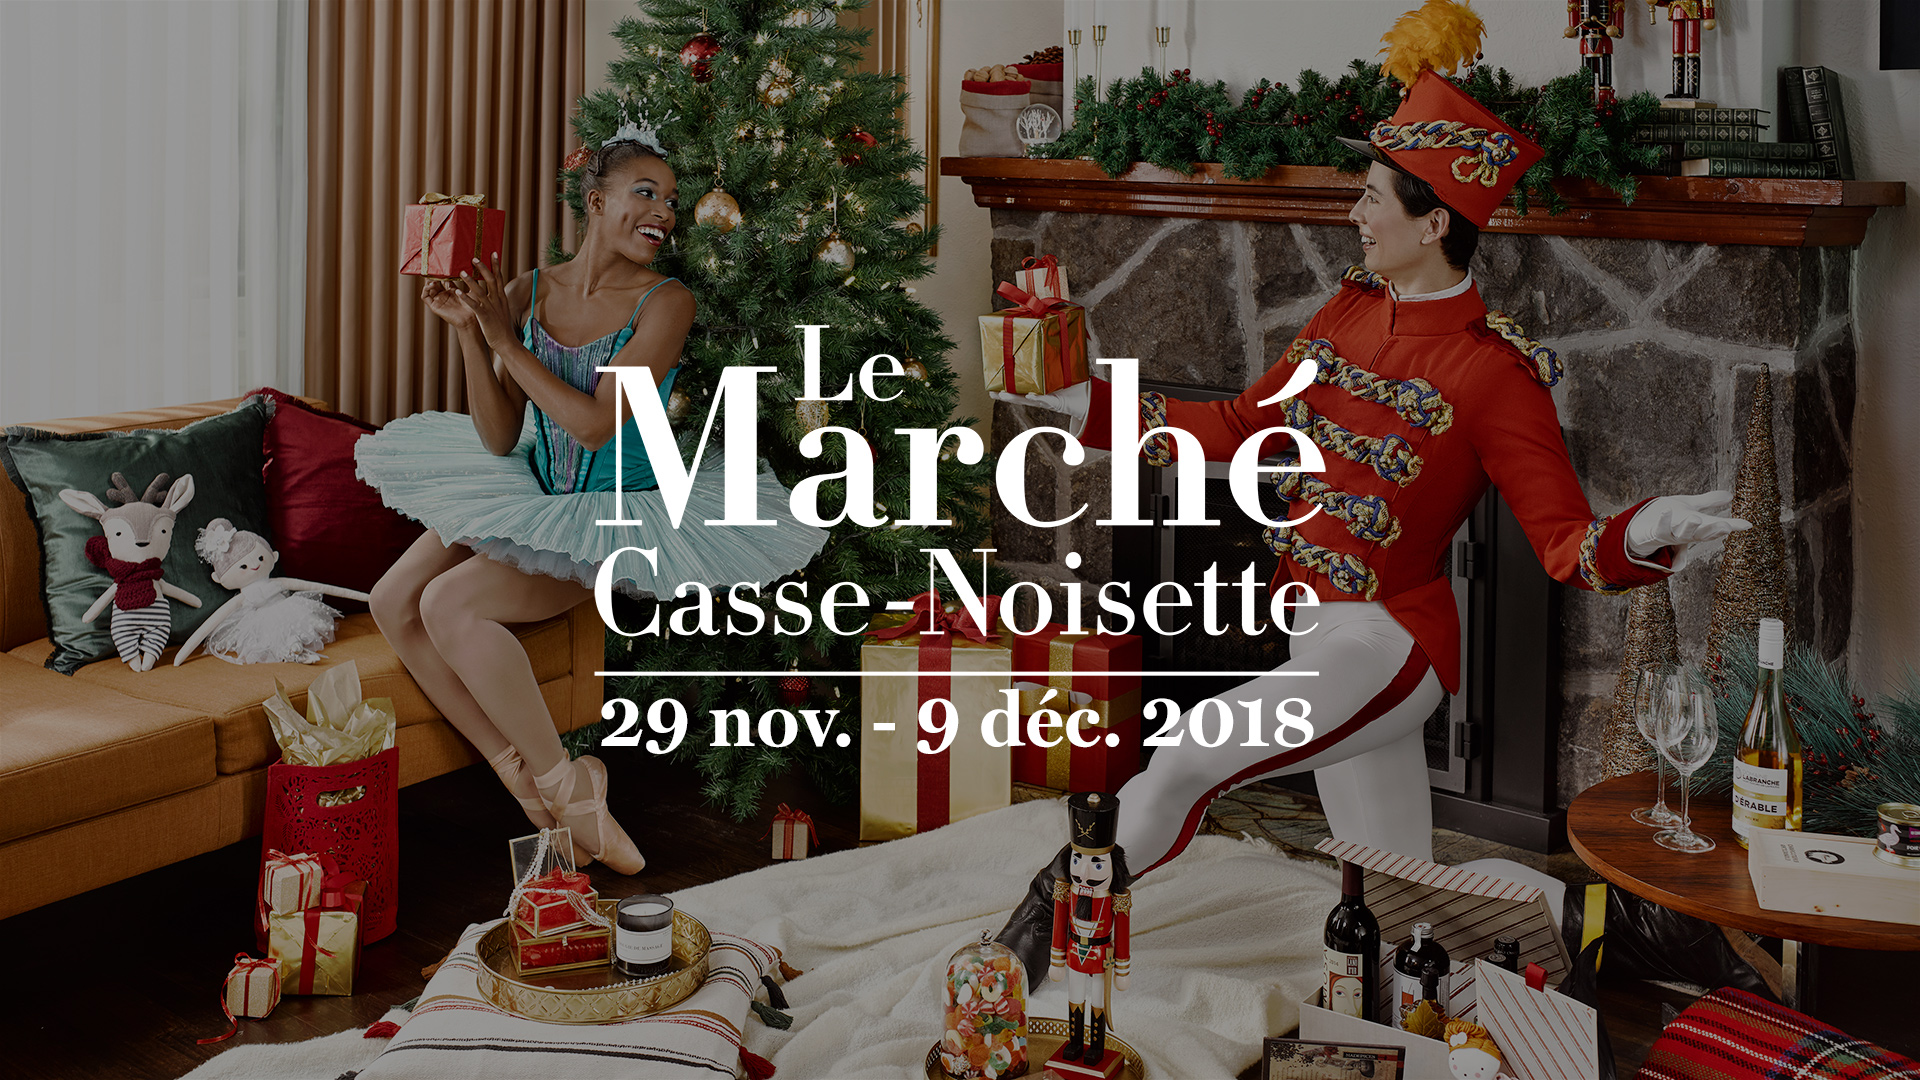 Publicité pour l'édition 2018 du Marché Casse-Noisette